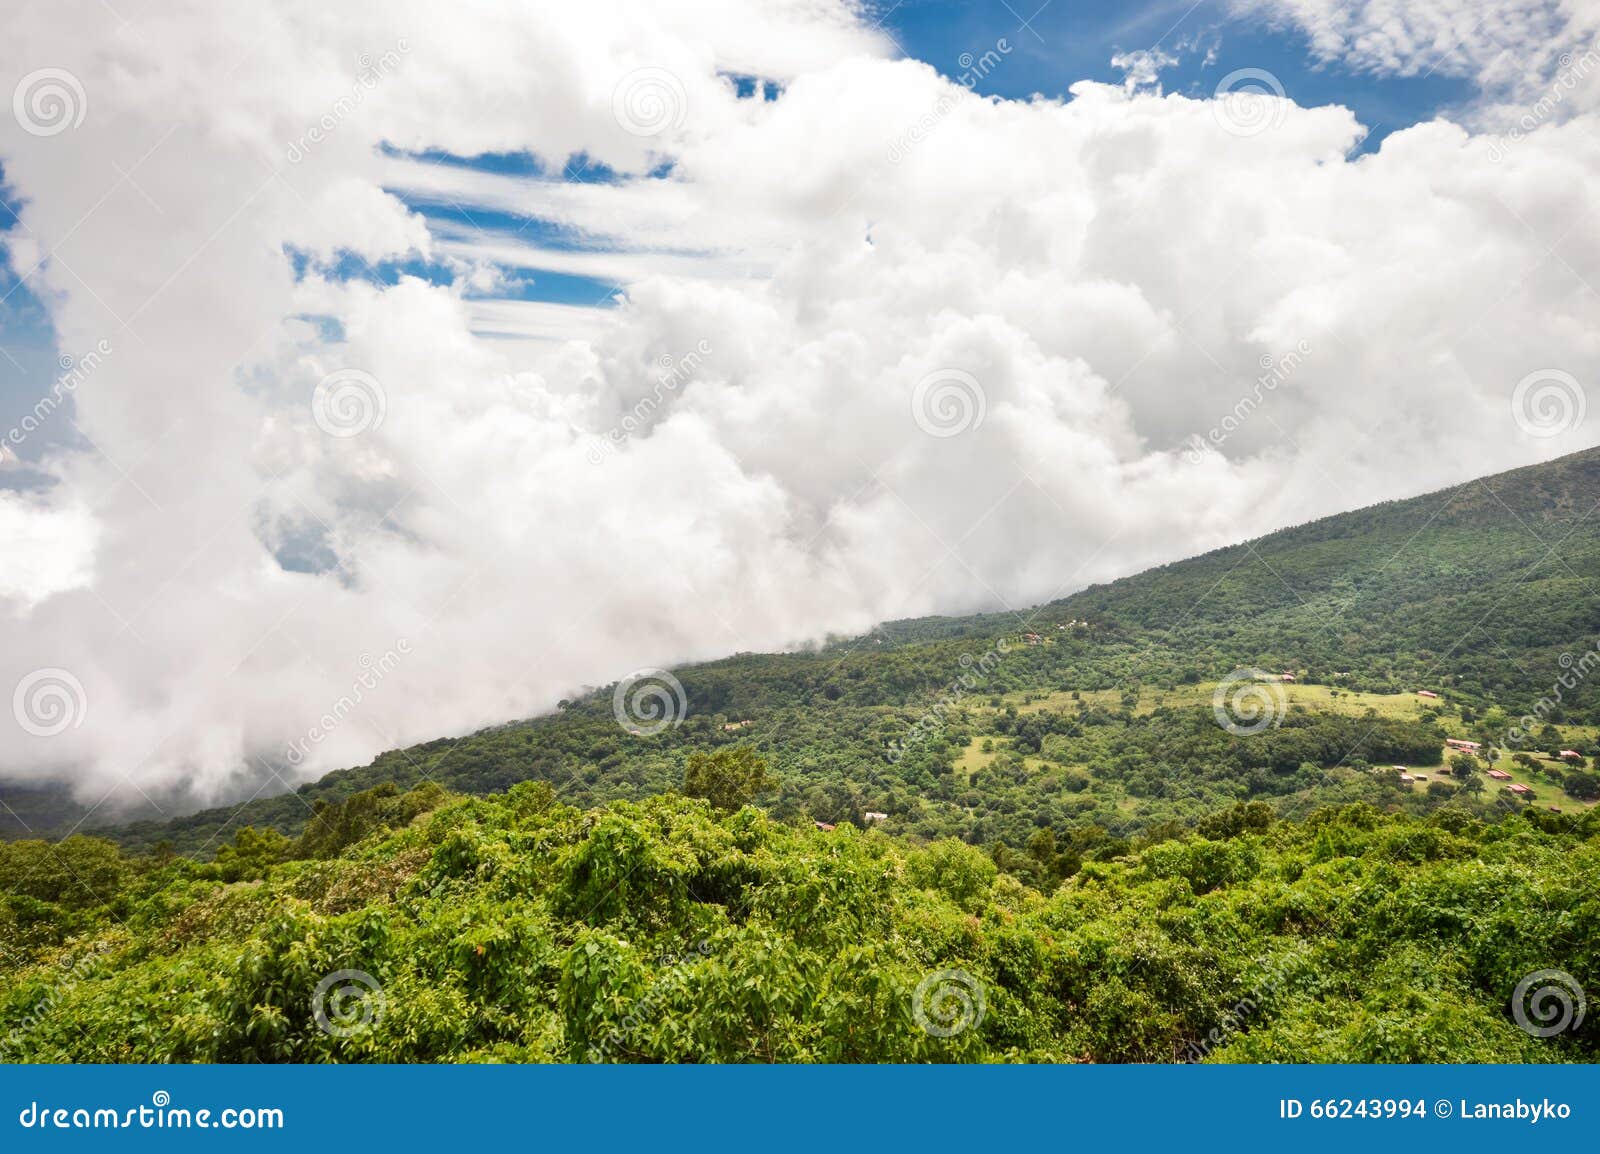 the green valley beneath the volcanoes, el salvador